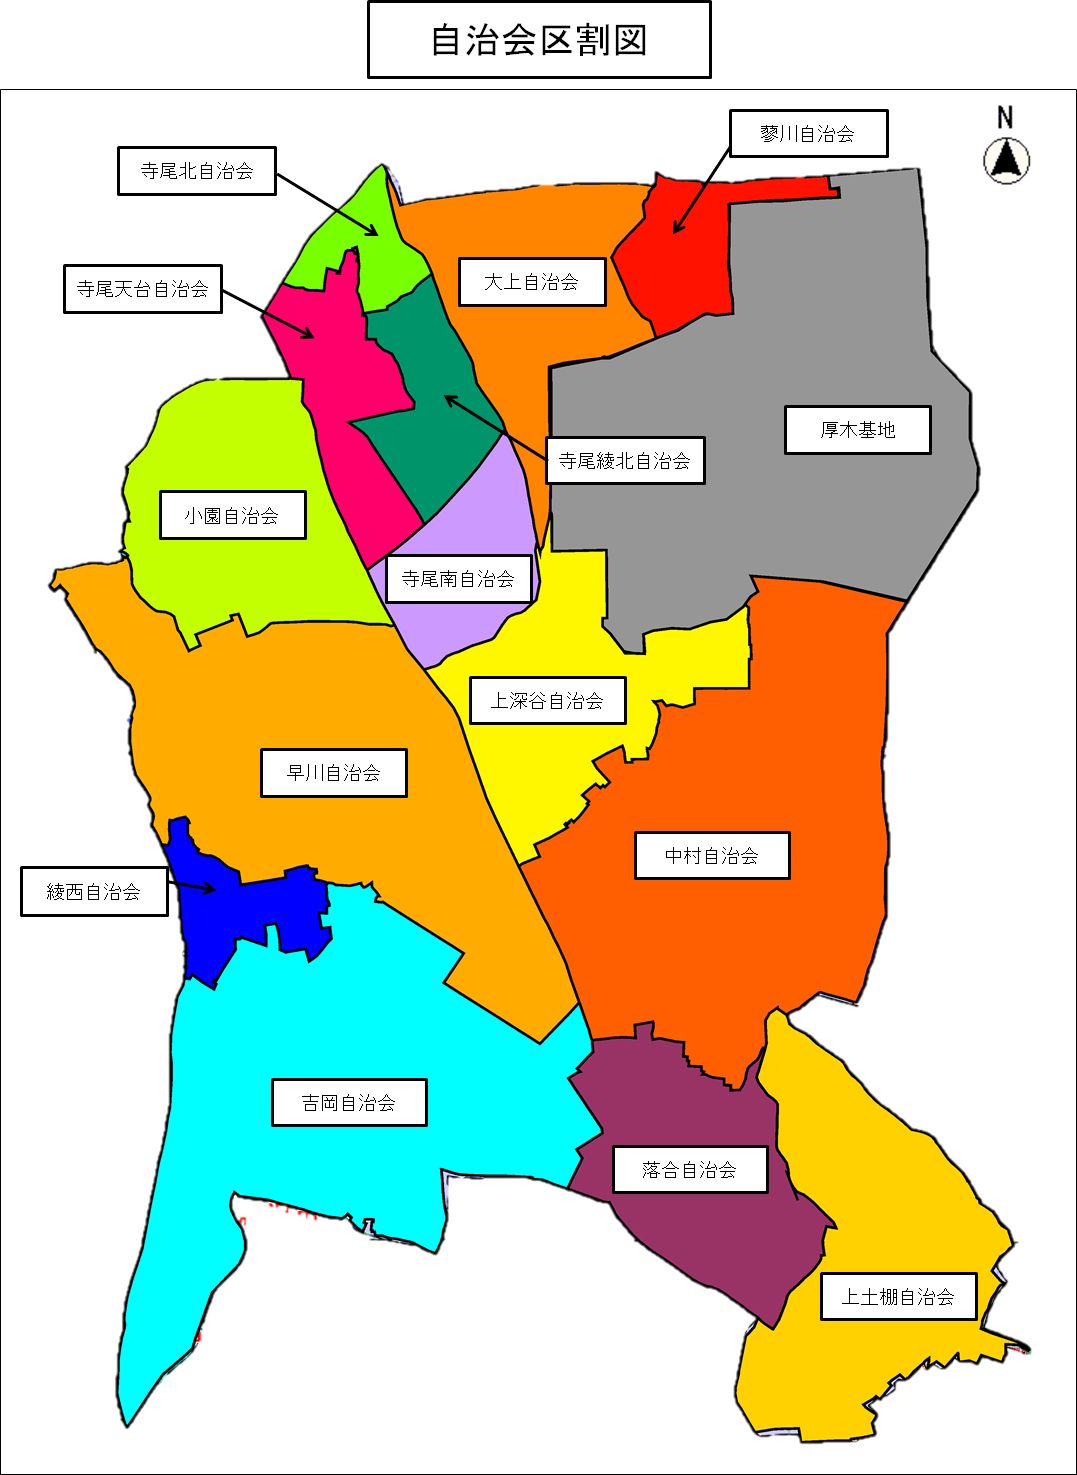 綾瀬市内の自治会区割を示した地図